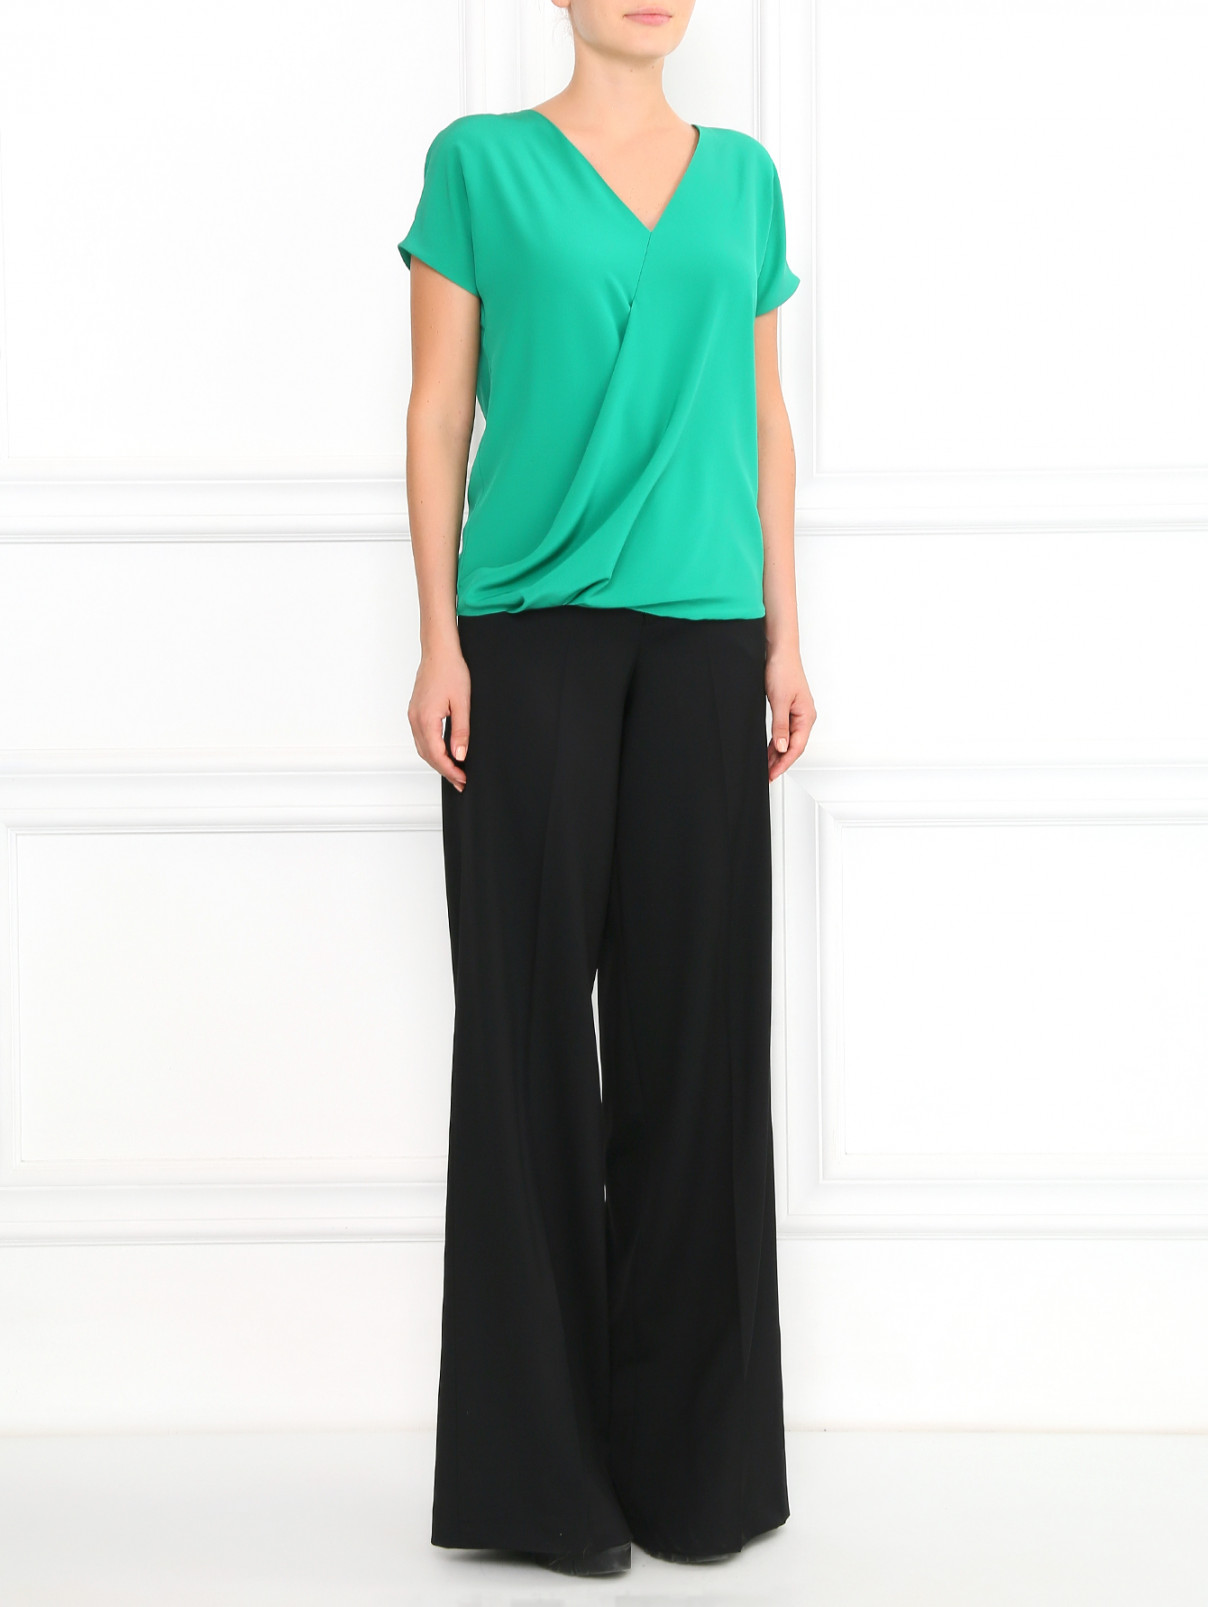 Блуза из шелка с запахом Etro  –  Модель Общий вид  – Цвет:  Зеленый